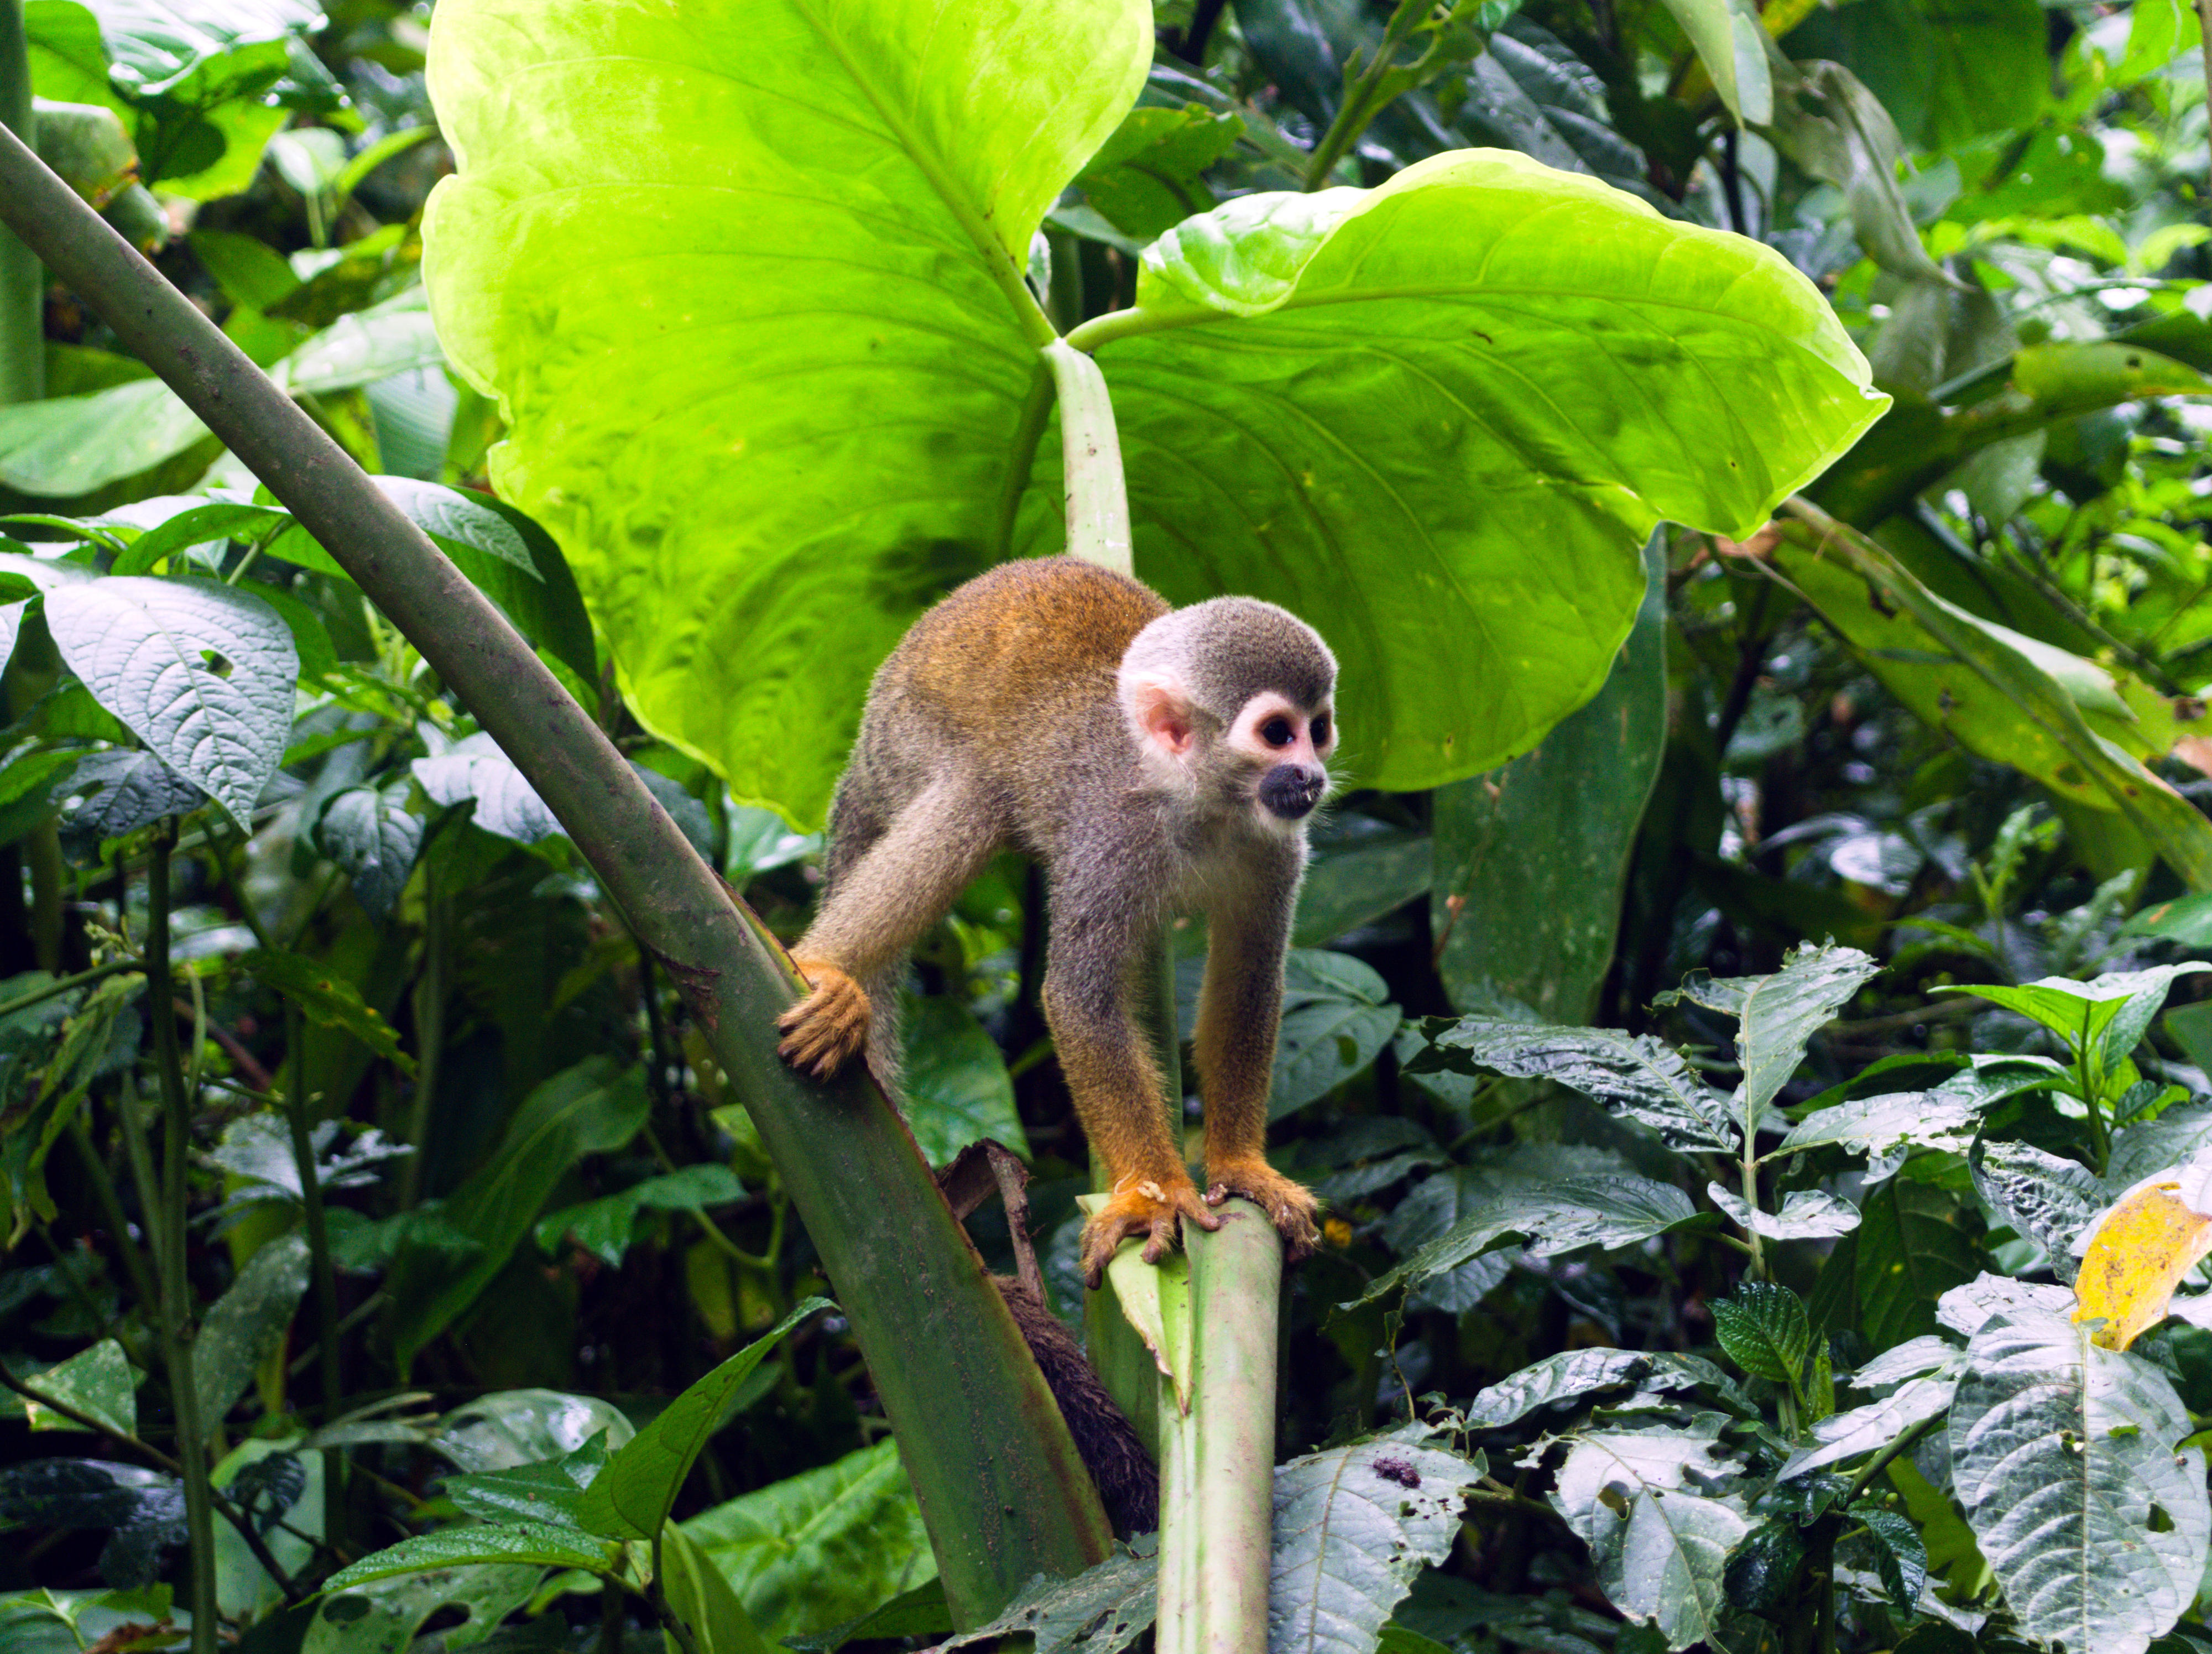 Ein Totenkopfaffe in Kolumbien klettert über den Stängel einer großen Blattpflanze